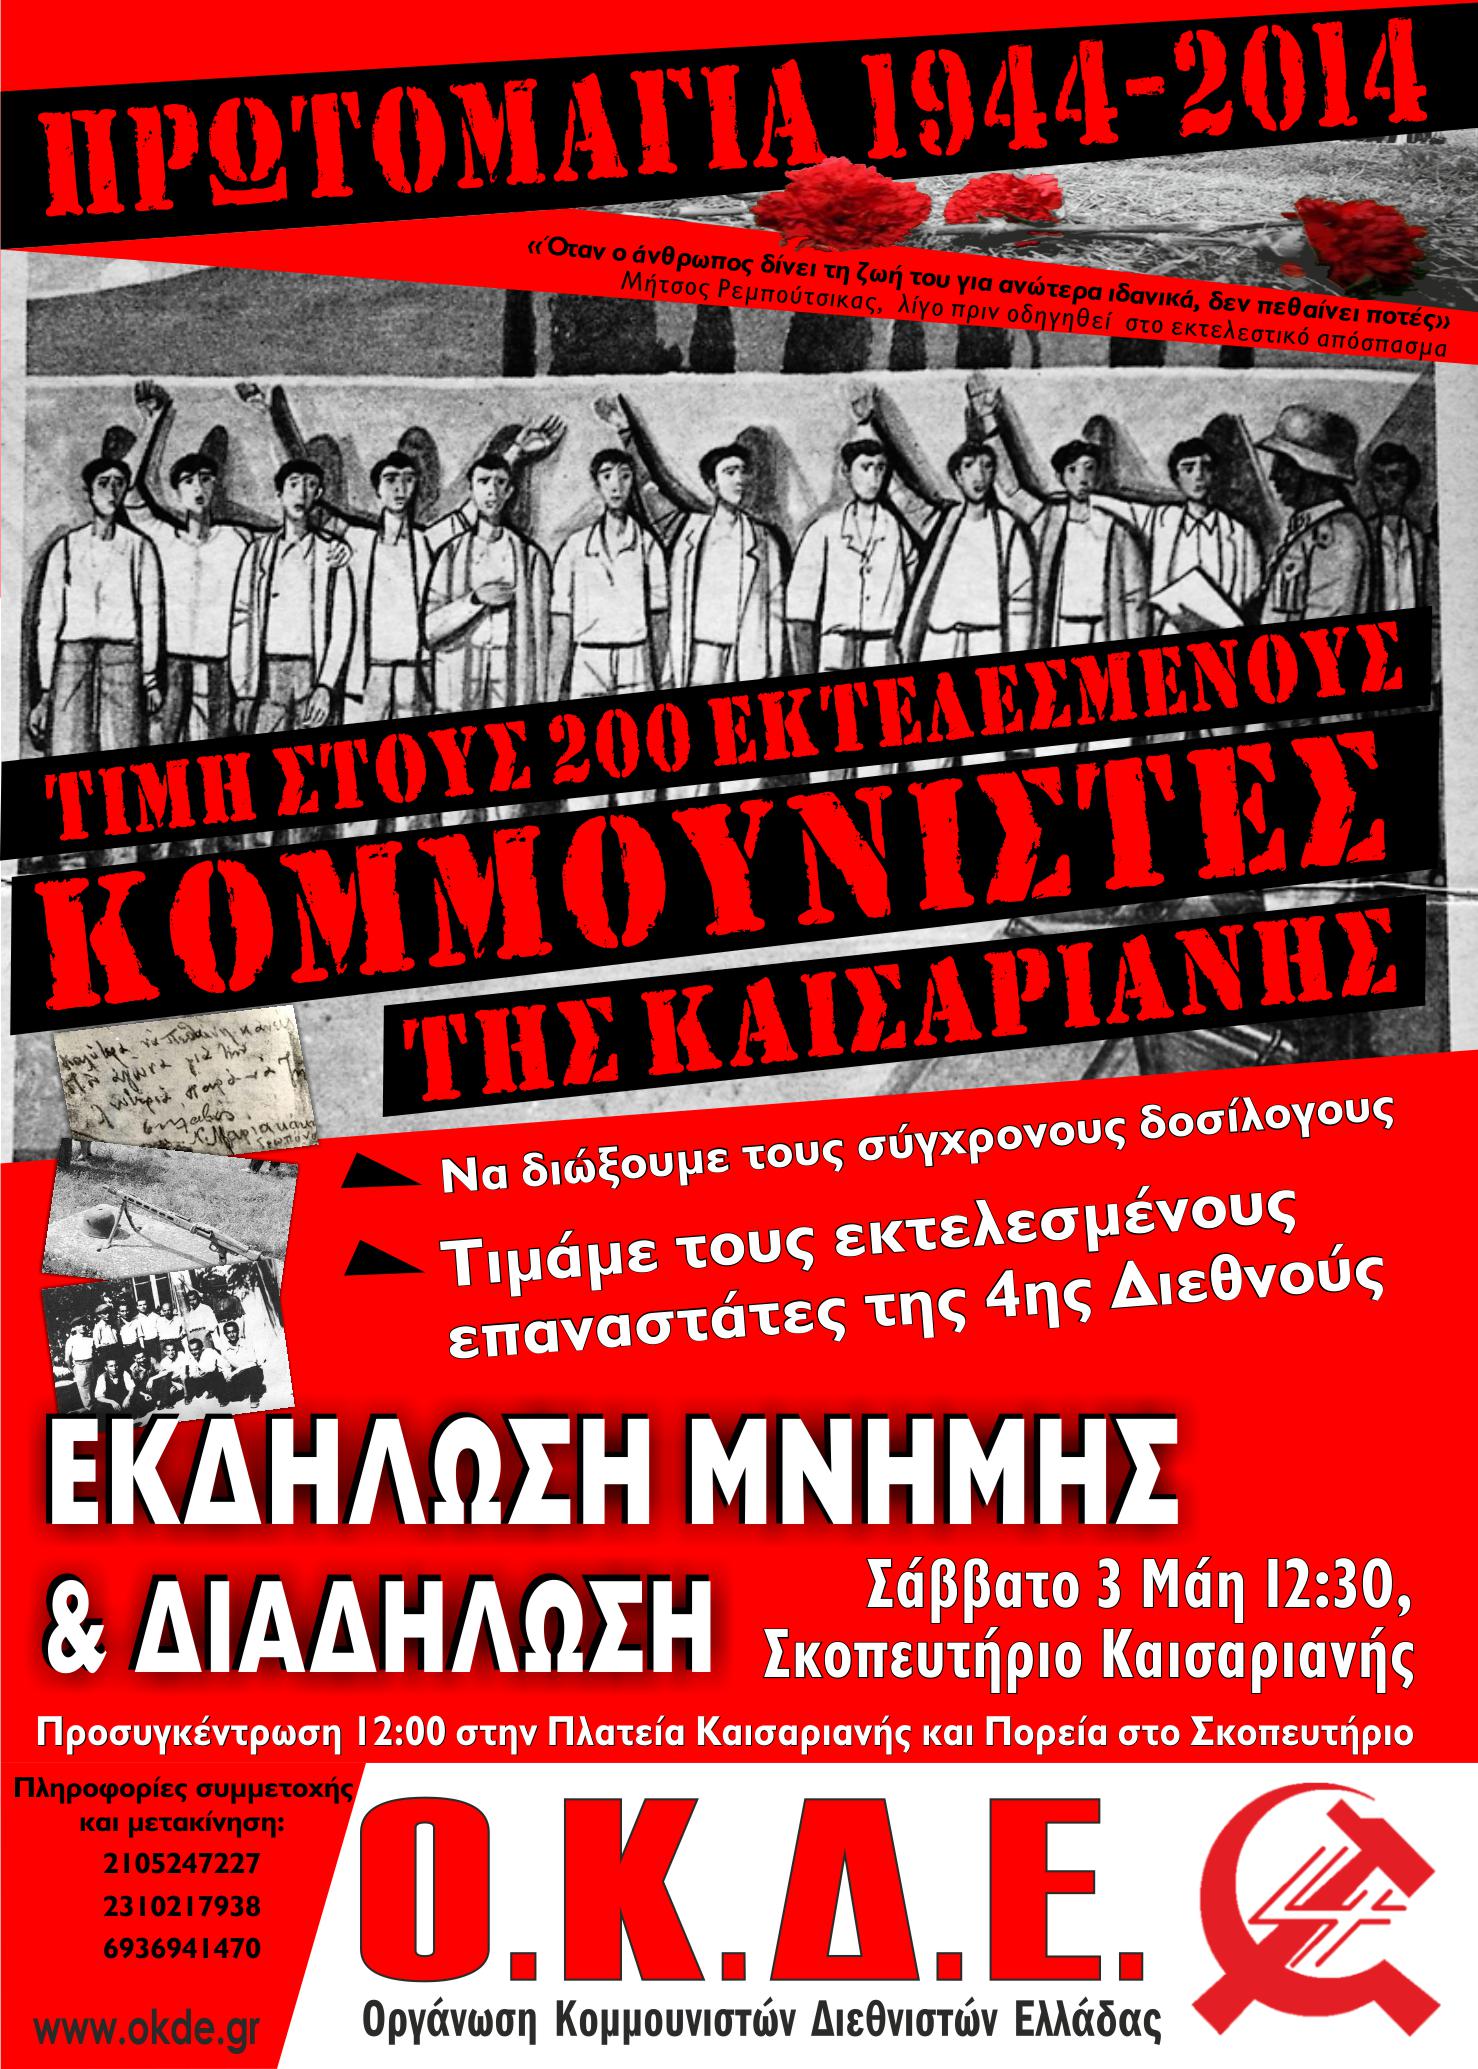 Πρωτομαγιά 1944 – 2014: 70 χρόνια από την εκτέλεση των 200 Κομμουνιστών στην Καισαριανή, Τιμάμε τους Ήρωές μας – Σάββατο 3/5, 12:00, Σκοπευτήριο